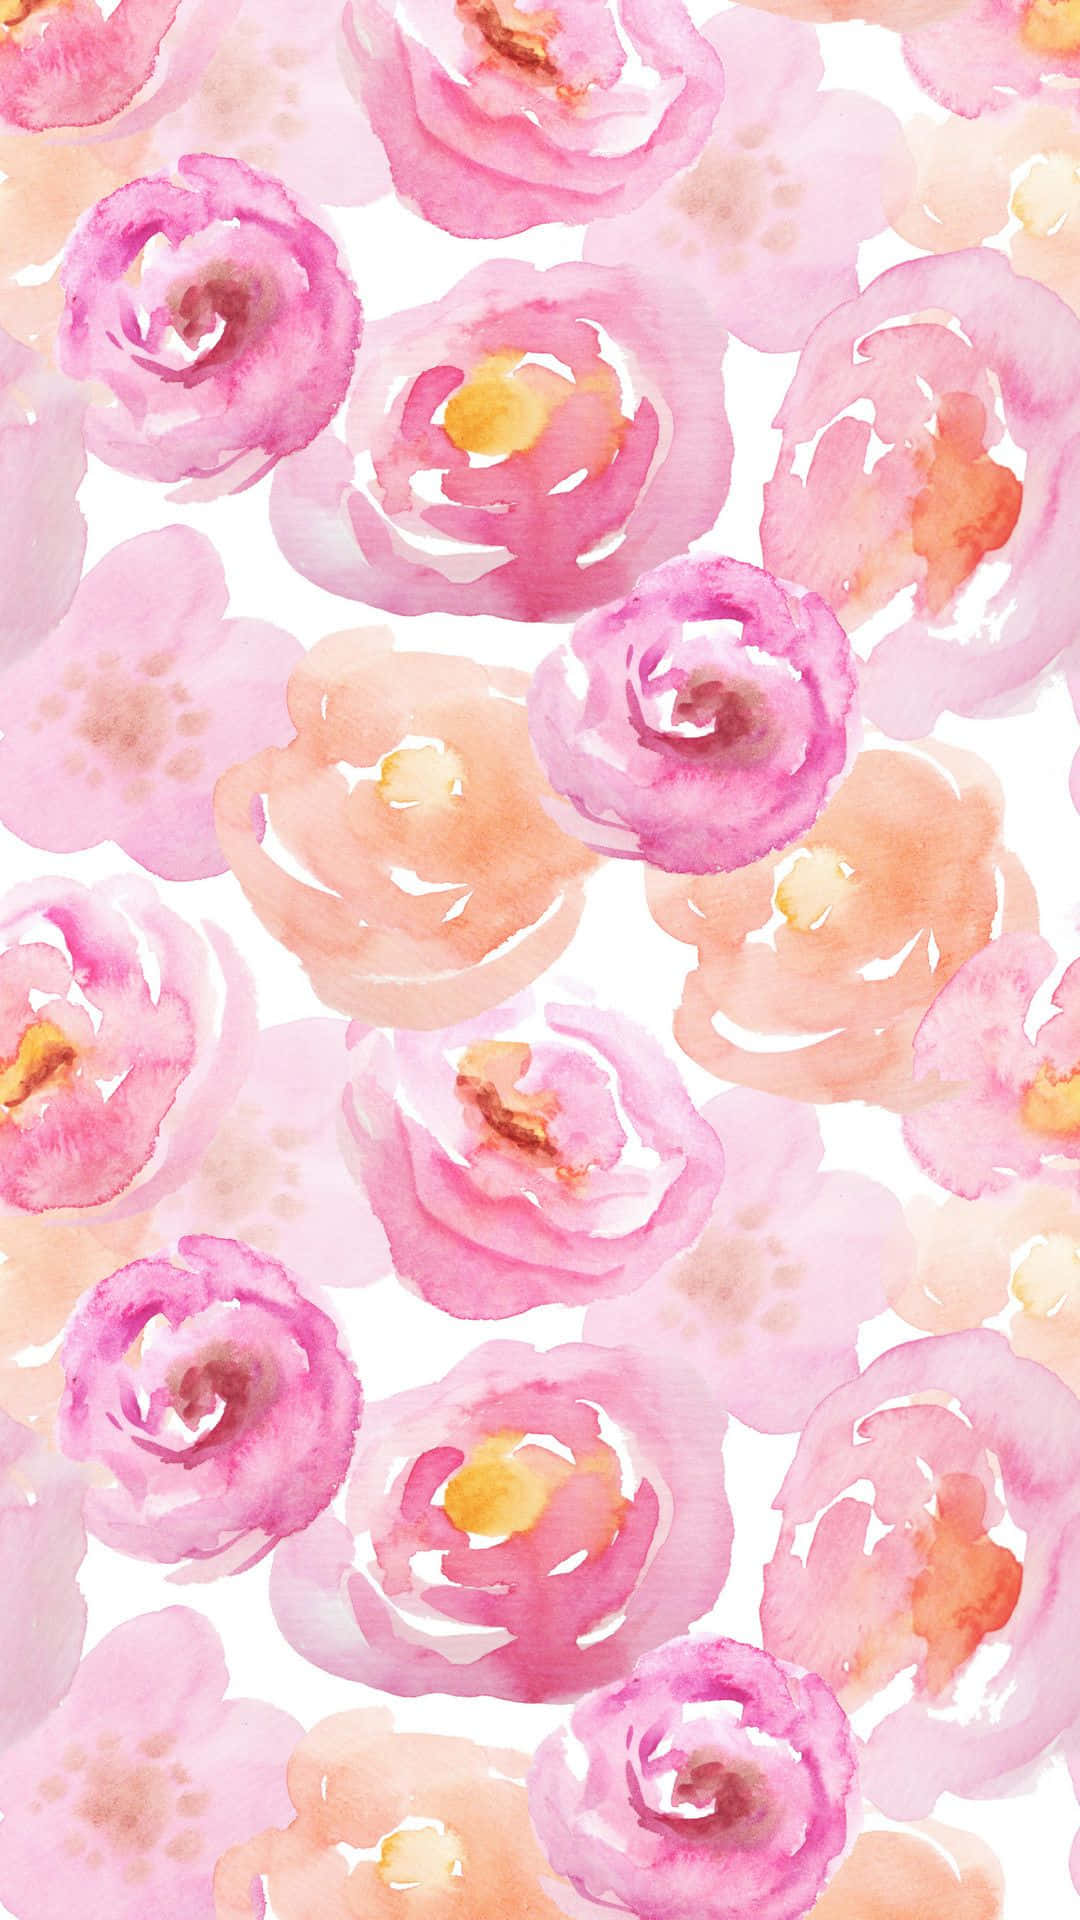 Celebrauna Primavera Floreciente Con Este Impresionante Patrón Floral En Color Rosa. Fondo de pantalla